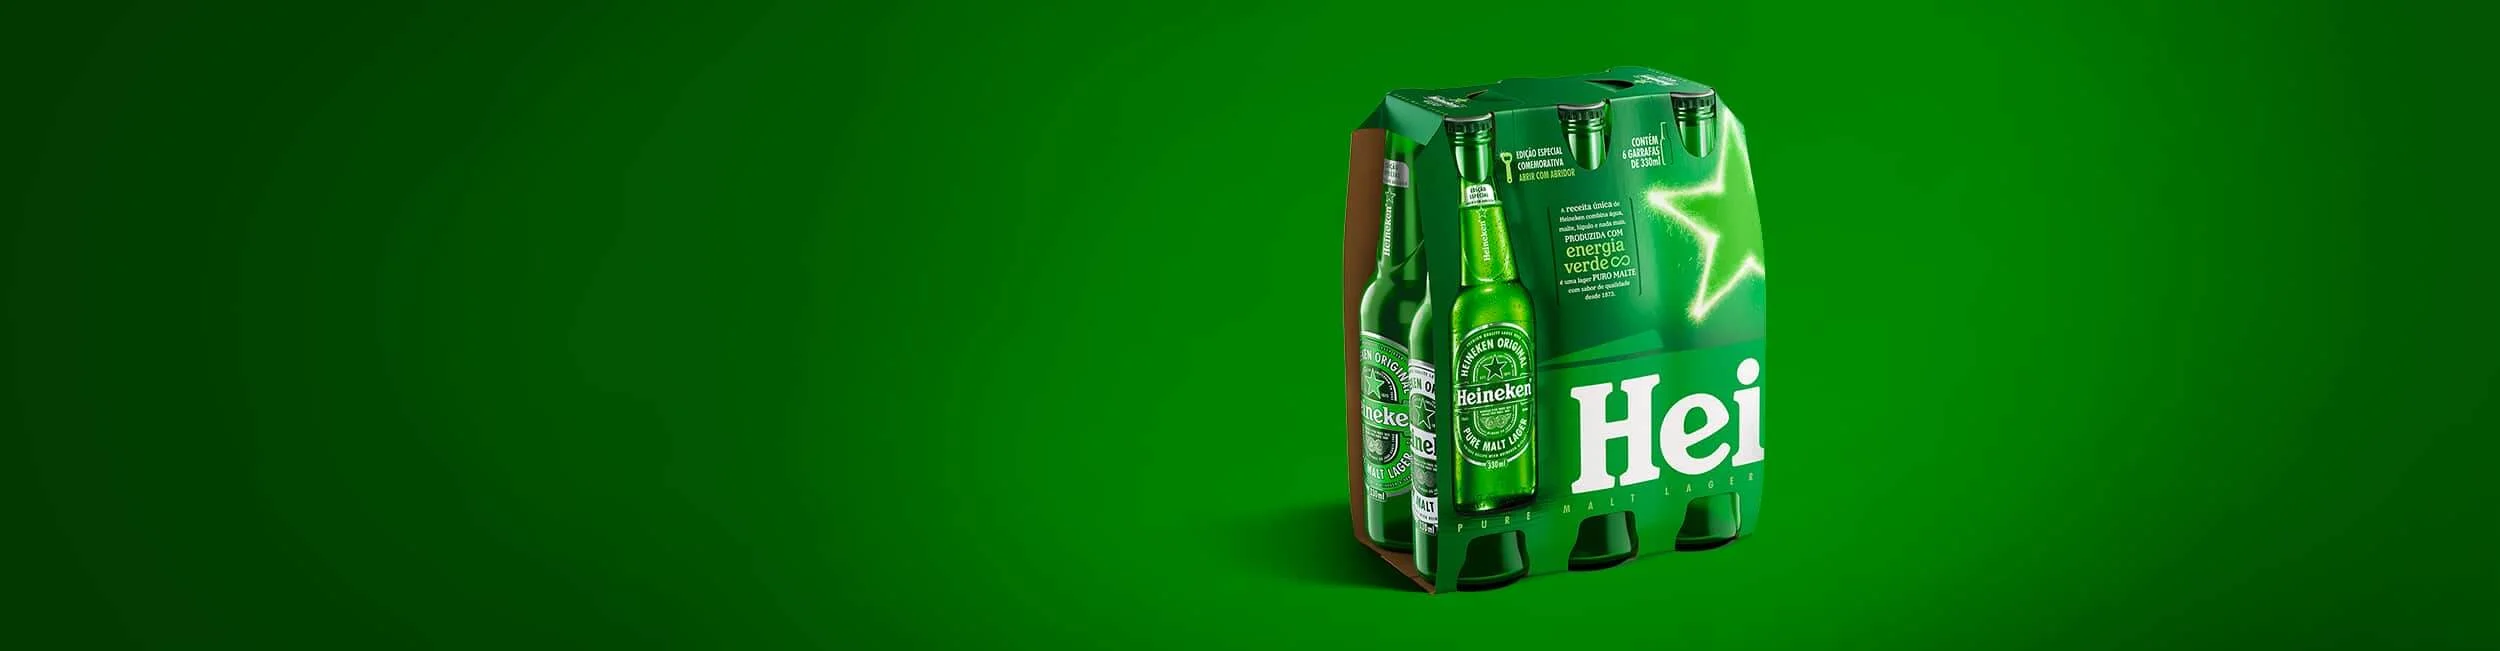 Fardo de garrafas Heineken edição especial energia verde